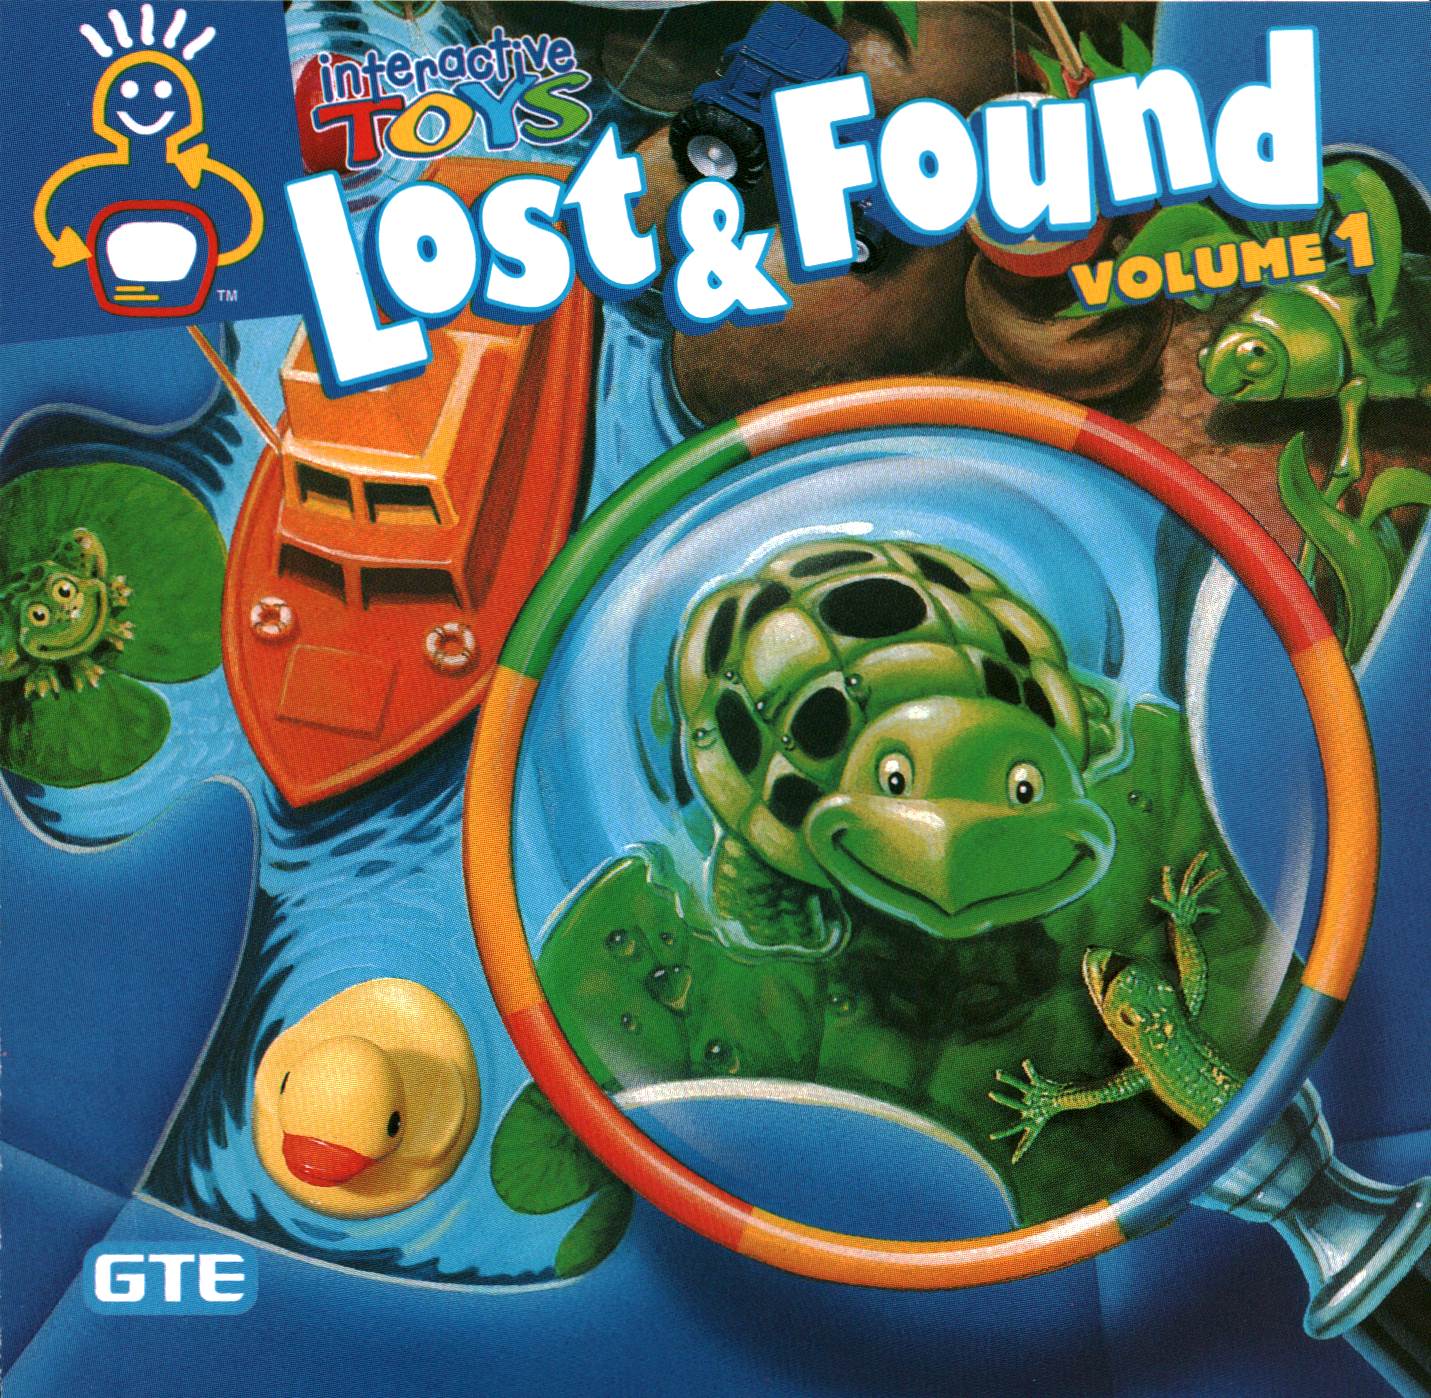 Lost & Found Volume 1